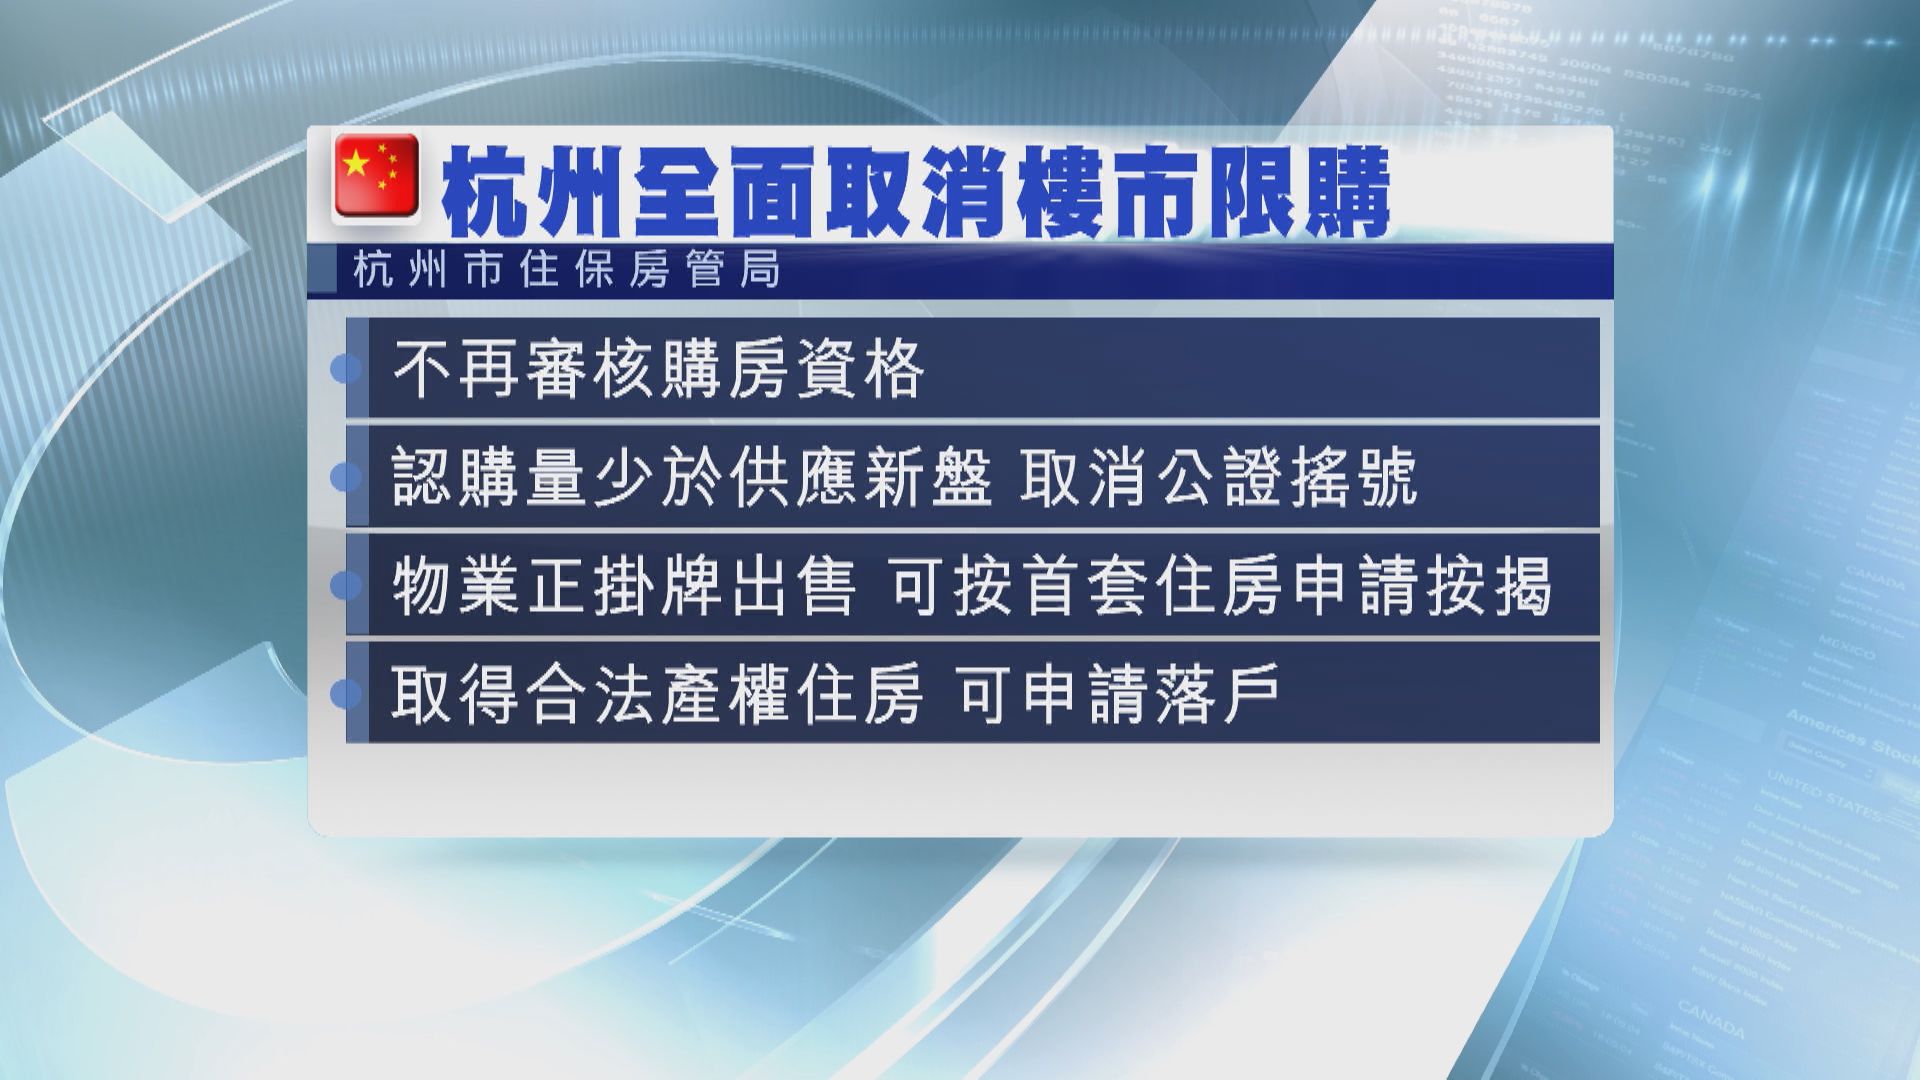 【救樓市】杭州全撤限購可增市場信心 瑞銀調查指買樓意欲仍低